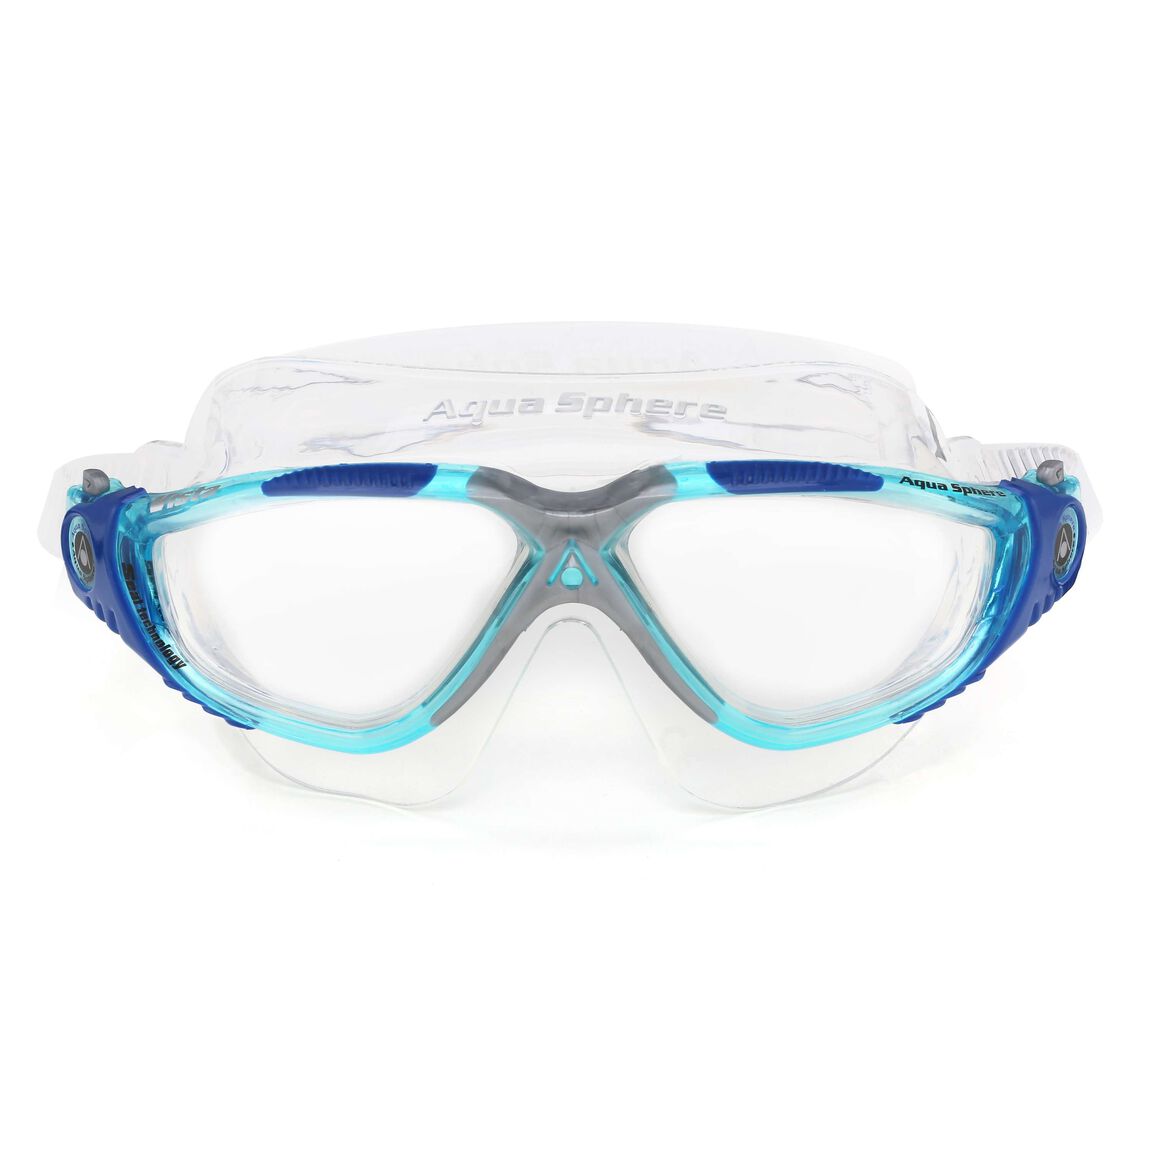 Aquasphere Vista Swim Mask - Turquoise/Blue